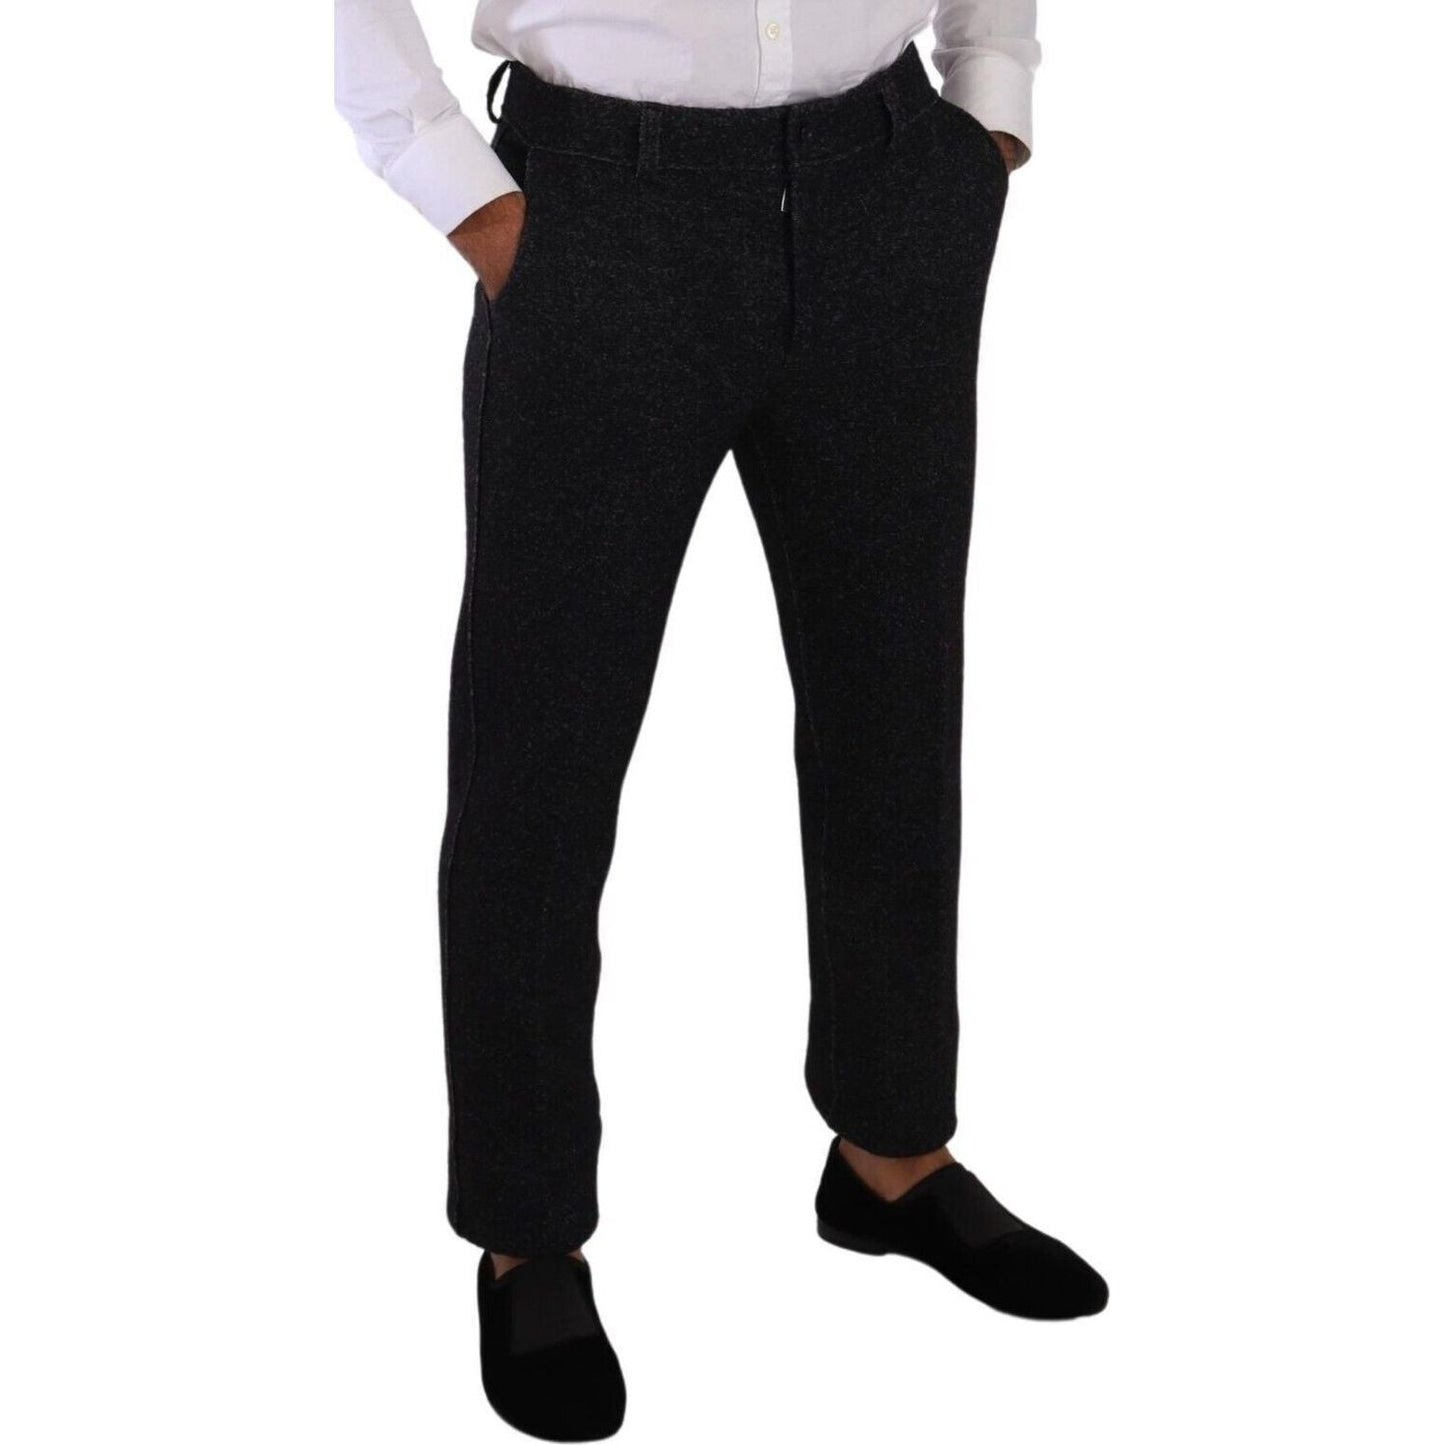 Dolce & Gabbana Elegant Wool Blend Dress Pants black-wool-men-formal-trouser-dress-pants